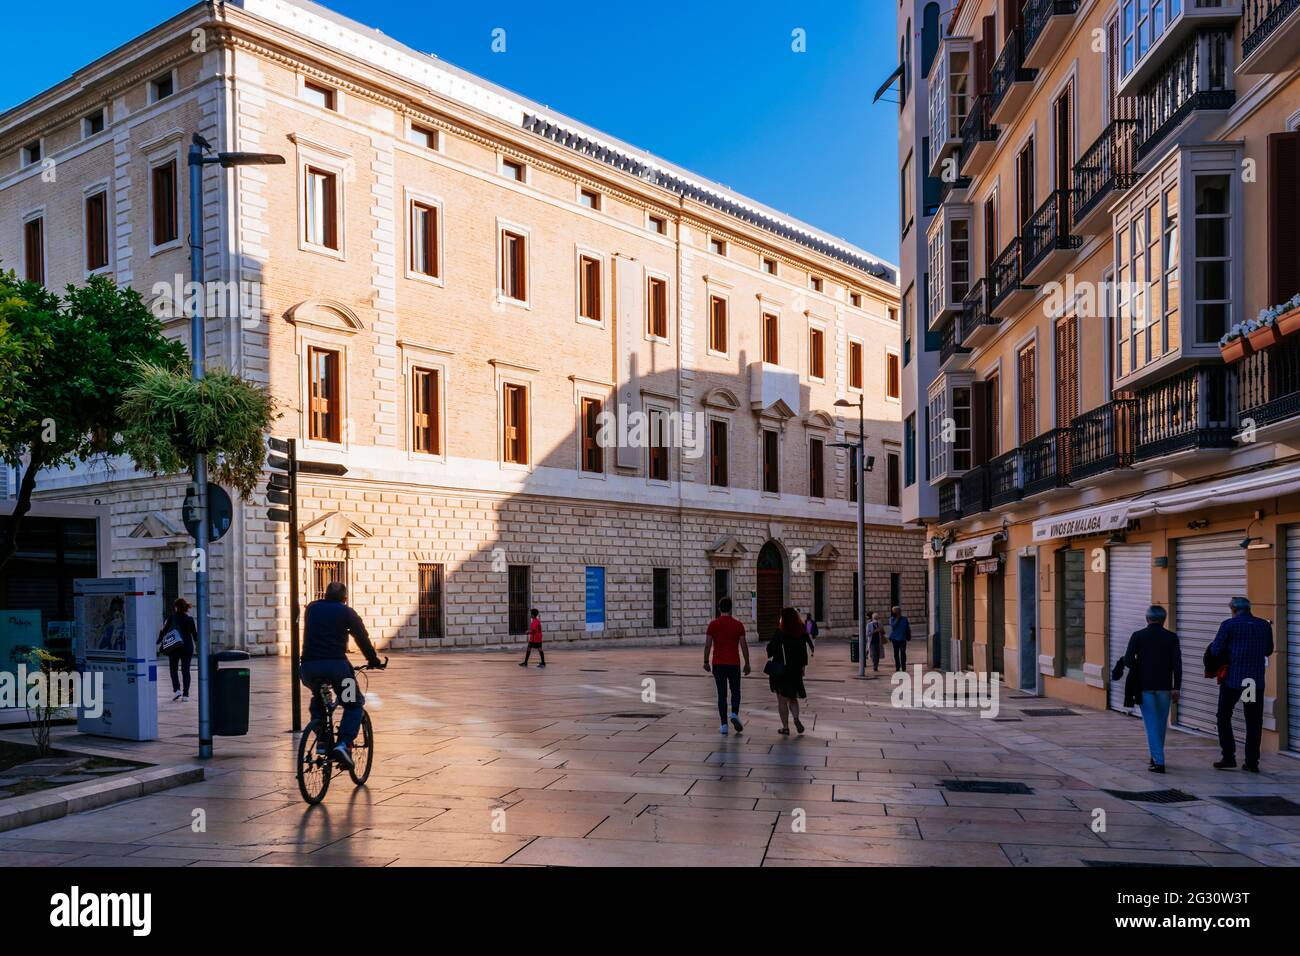 Le Palacio de la Aduana, palais des douanes, est un bâtiment à Málaga, actuellement le siège du Museo de Málaga, musée de Malaga. Malaga, Andalousie Banque D'Images